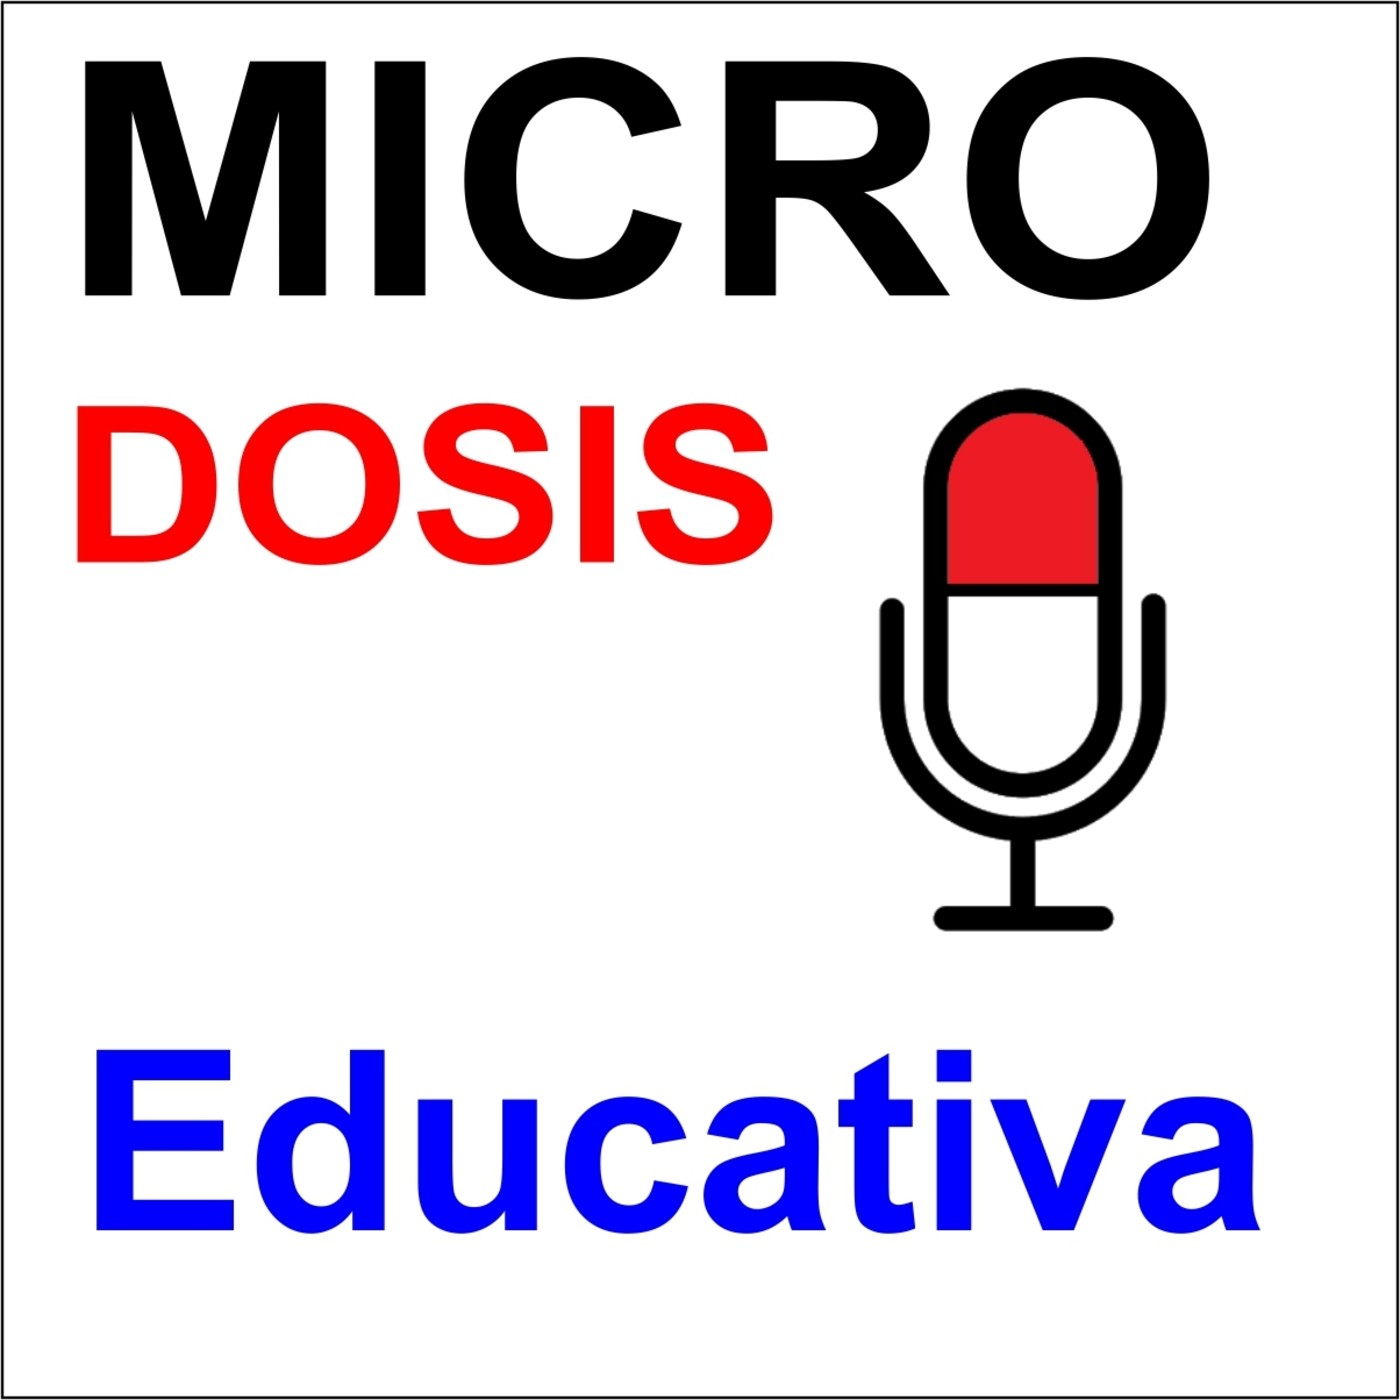 MICRO-DOSIS EDUCATIVA